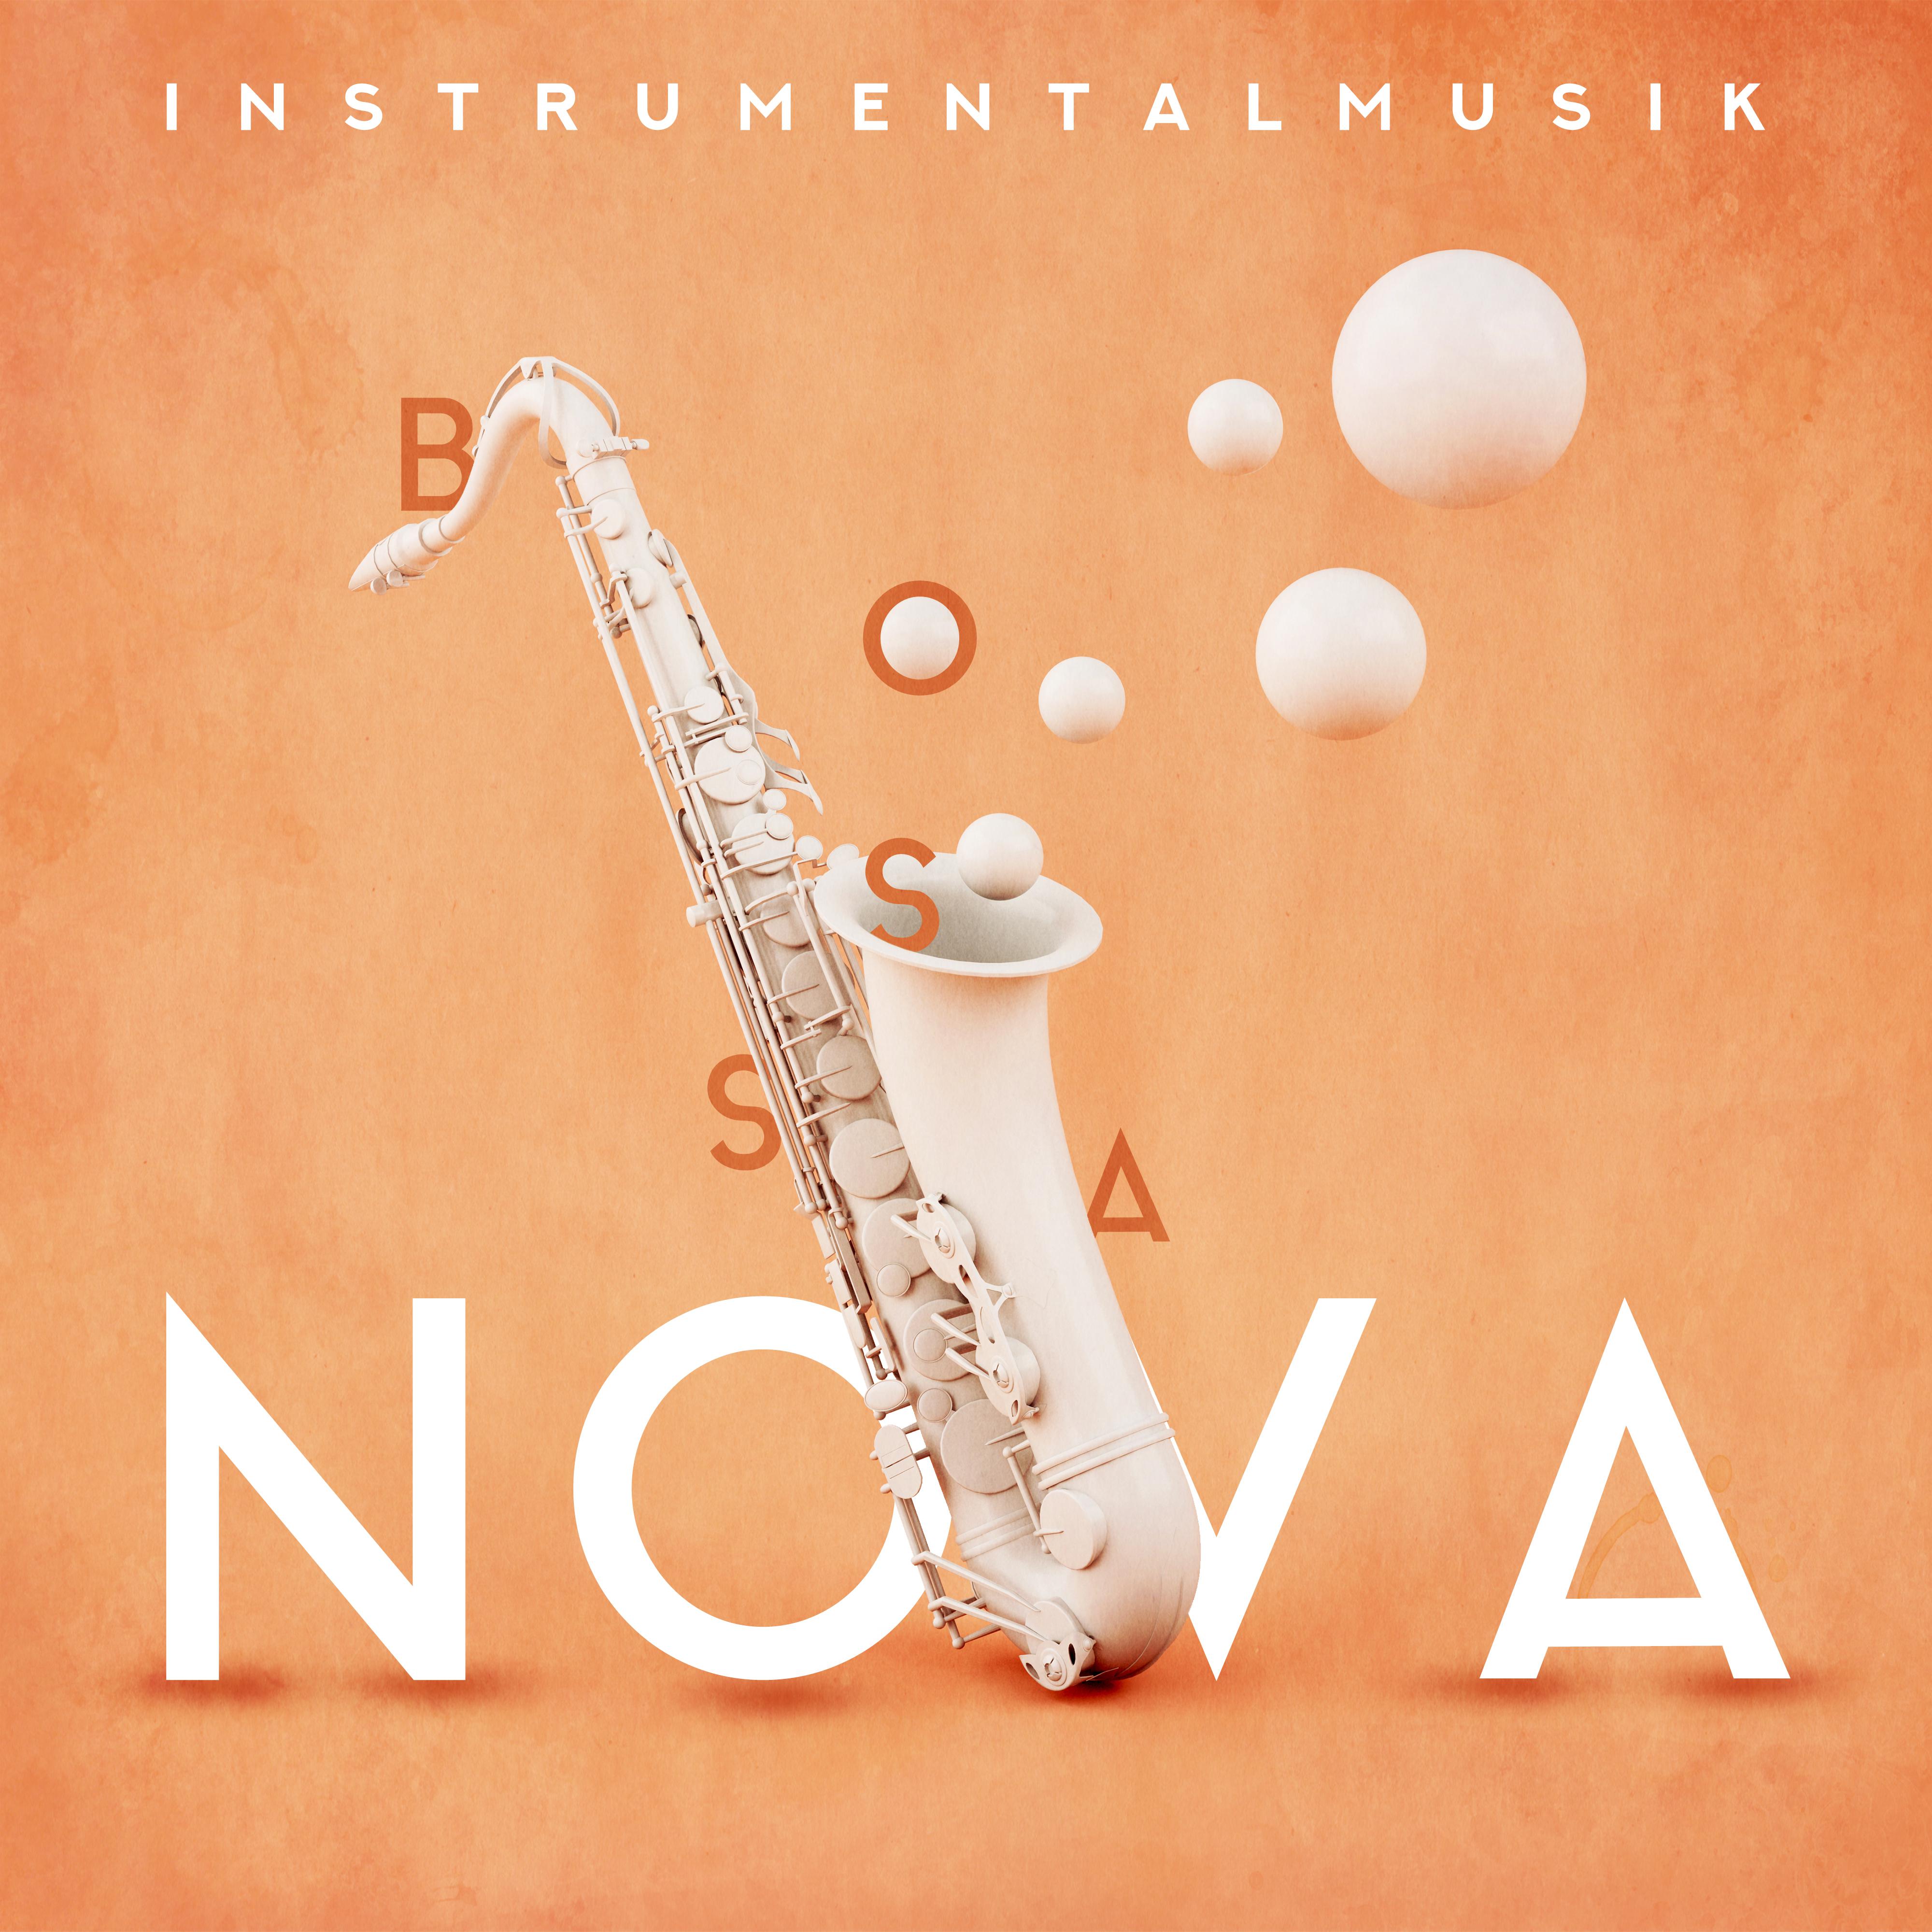 Instrumentalmusik Bossa Nova